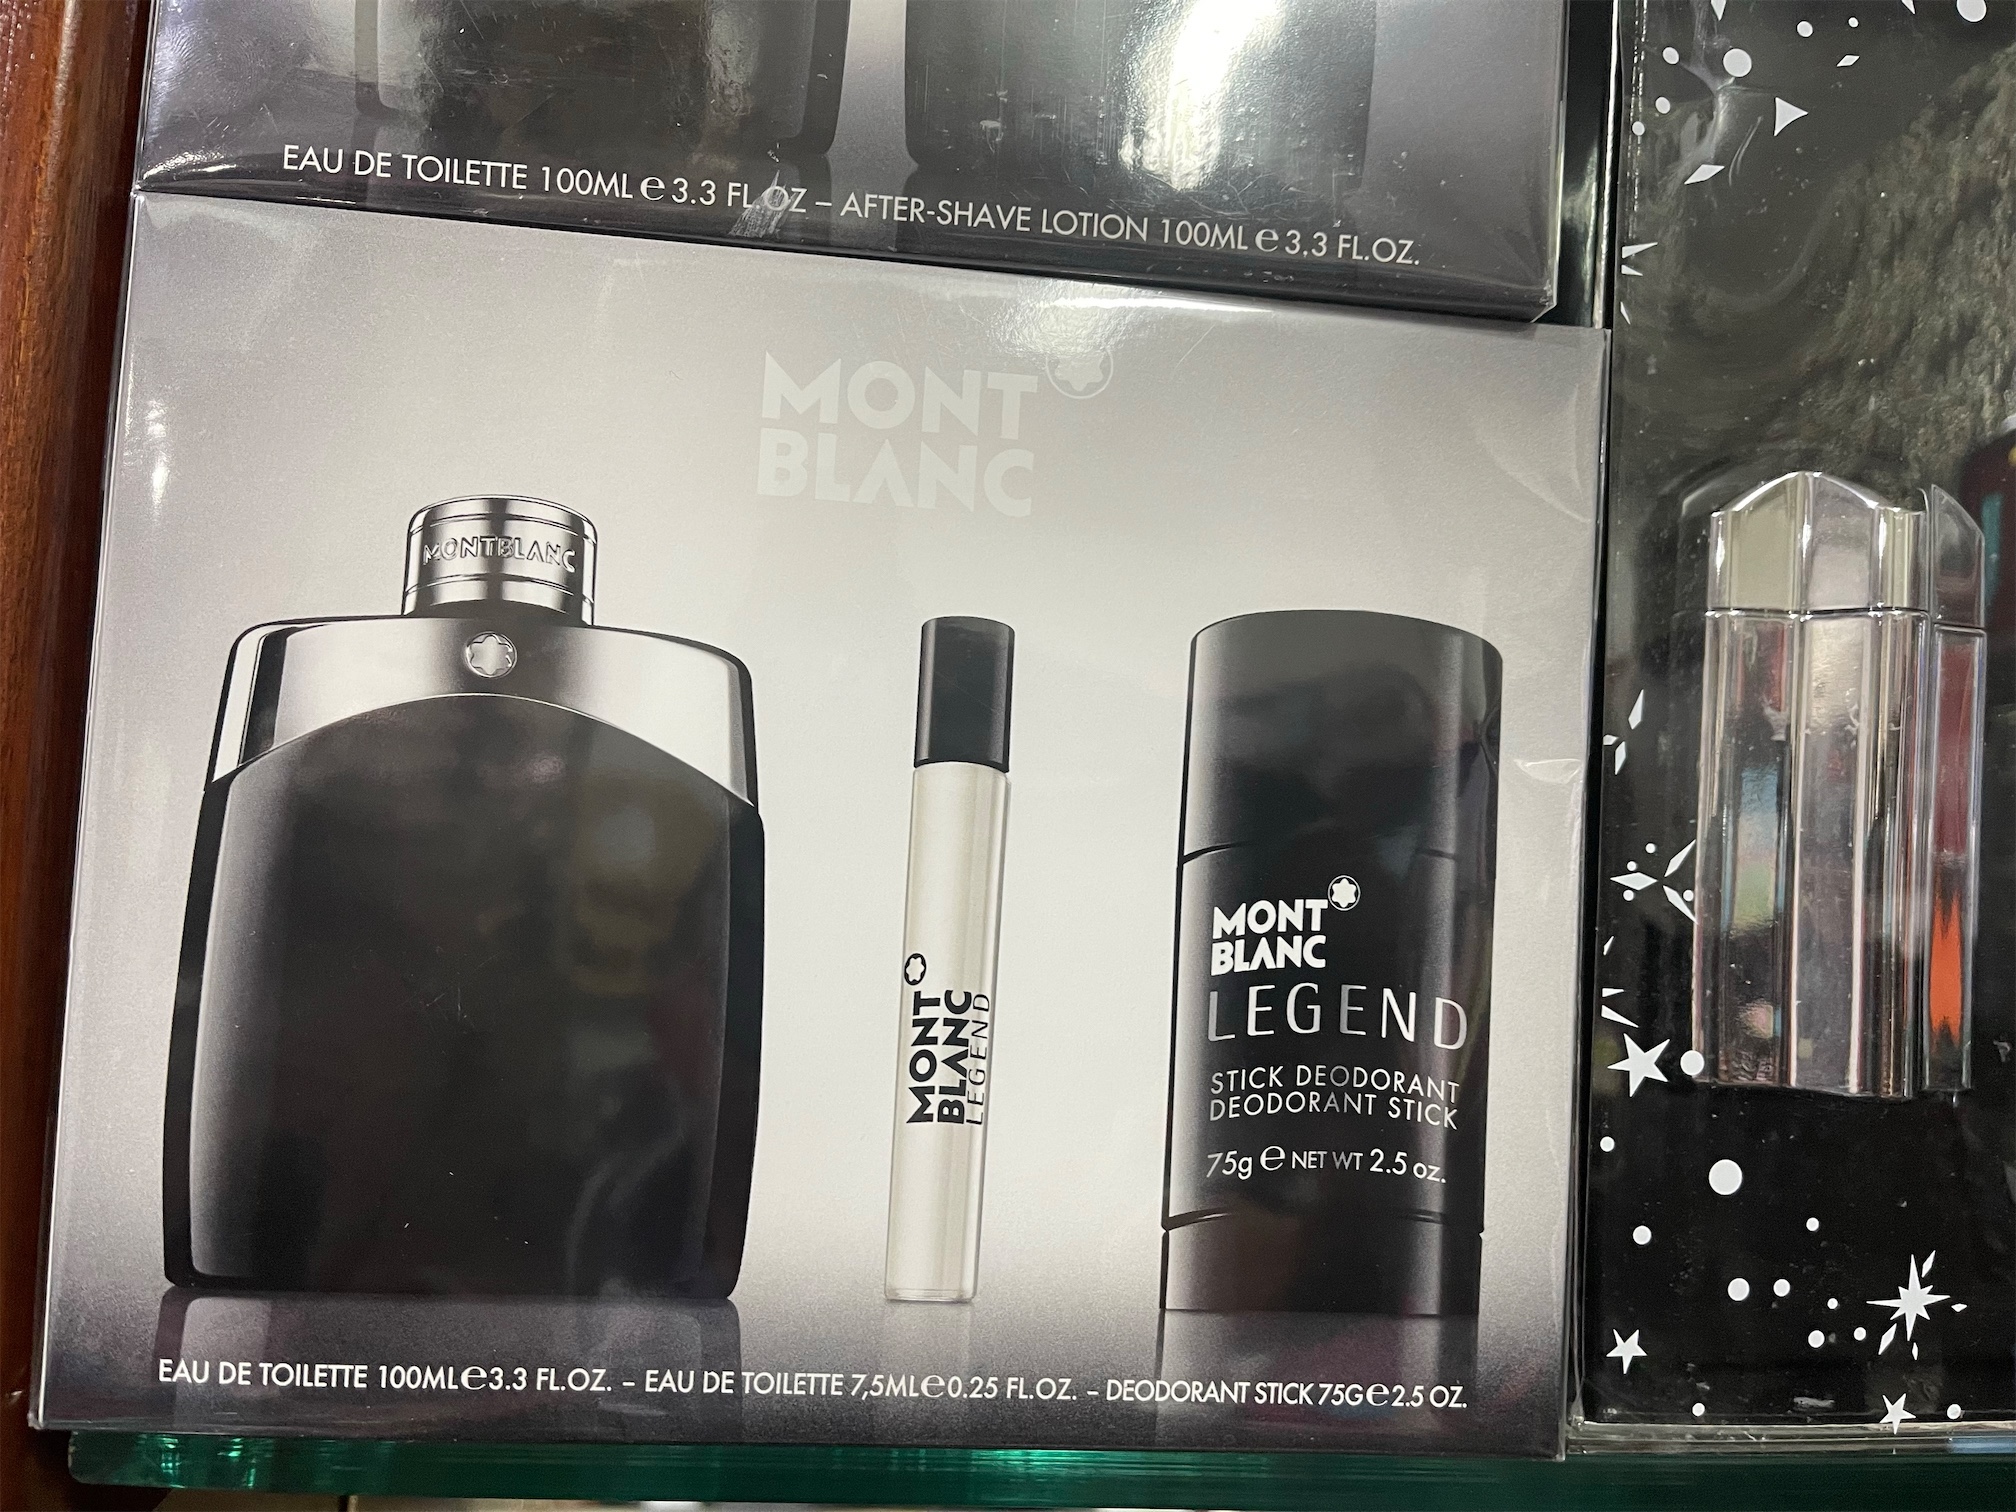 salud y belleza - Set perfume Mont Blanc. Original. AL POR MAYOR Y AL DETALLE